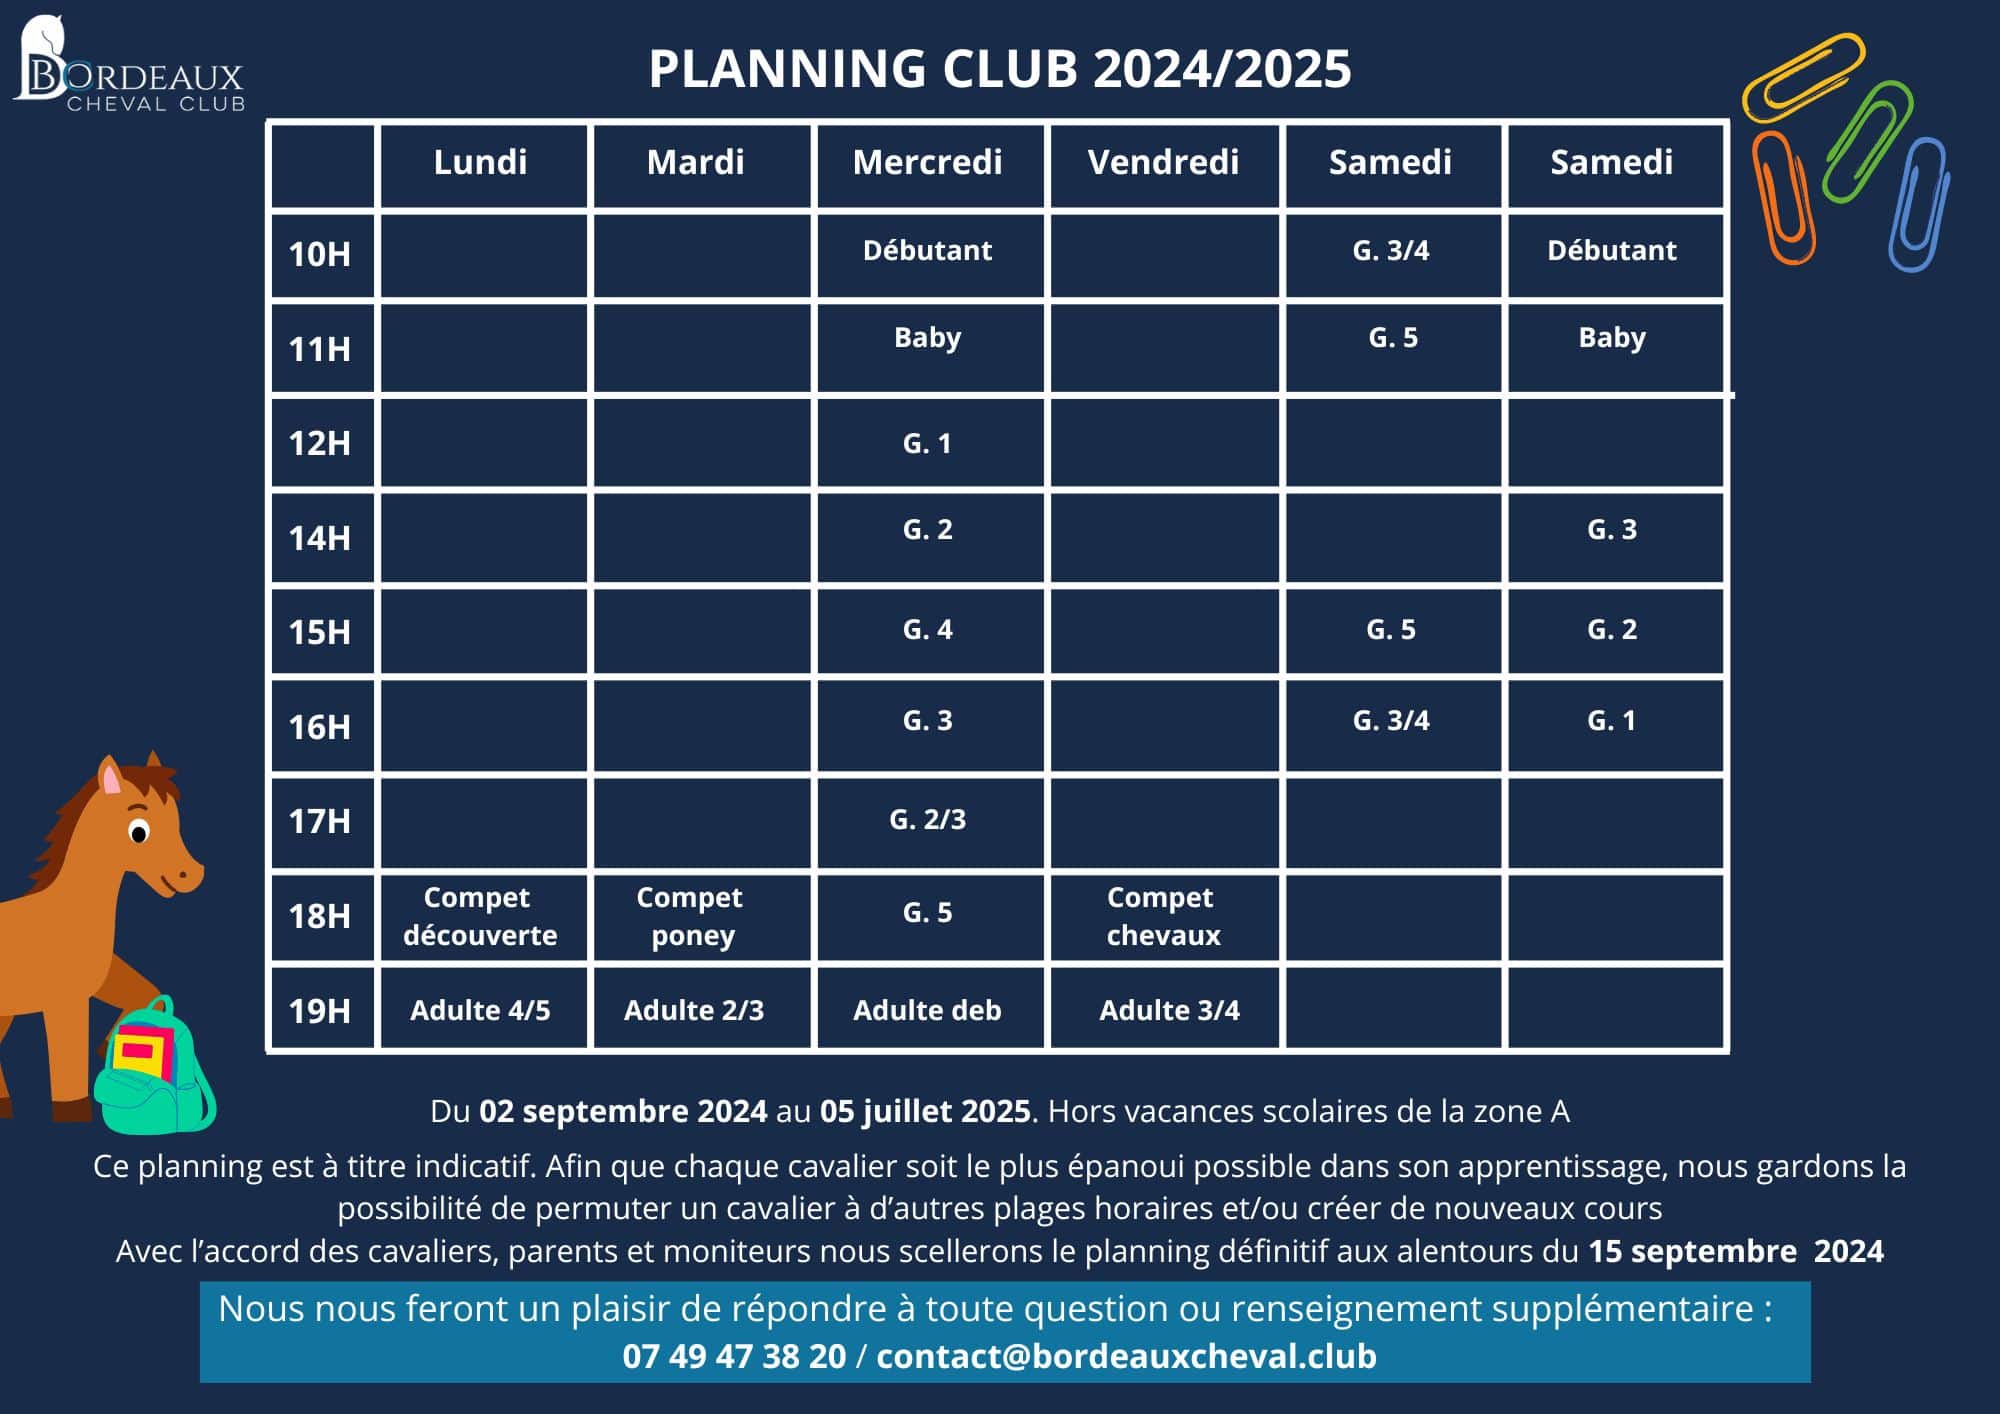 Planning de cours pour l'année 2024/2025 du Bordeaux Cheval CLub